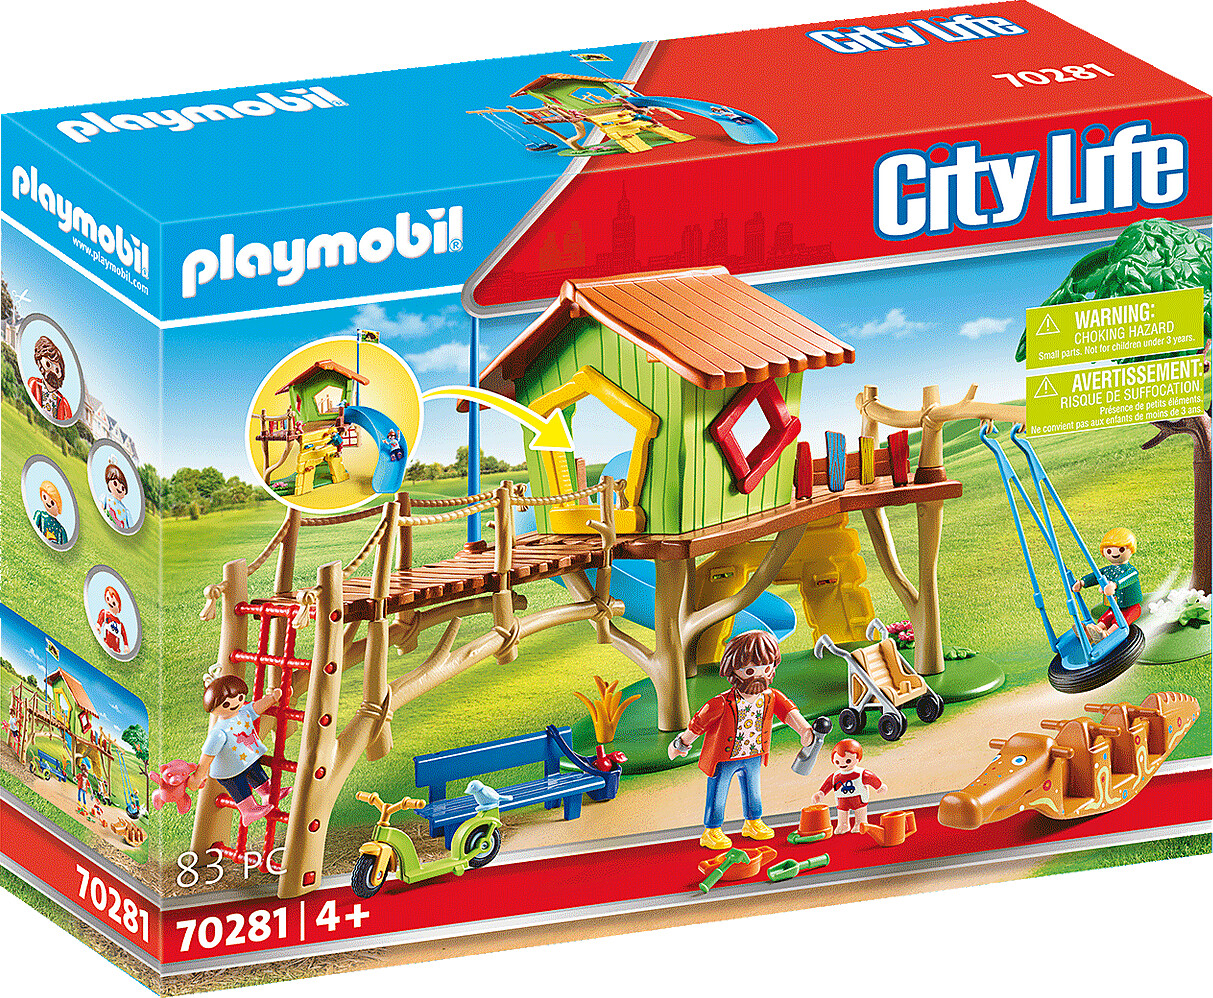 Billede af Playmobil City Life - Eventyr Legeplads - 70281 hos Gucca.dk